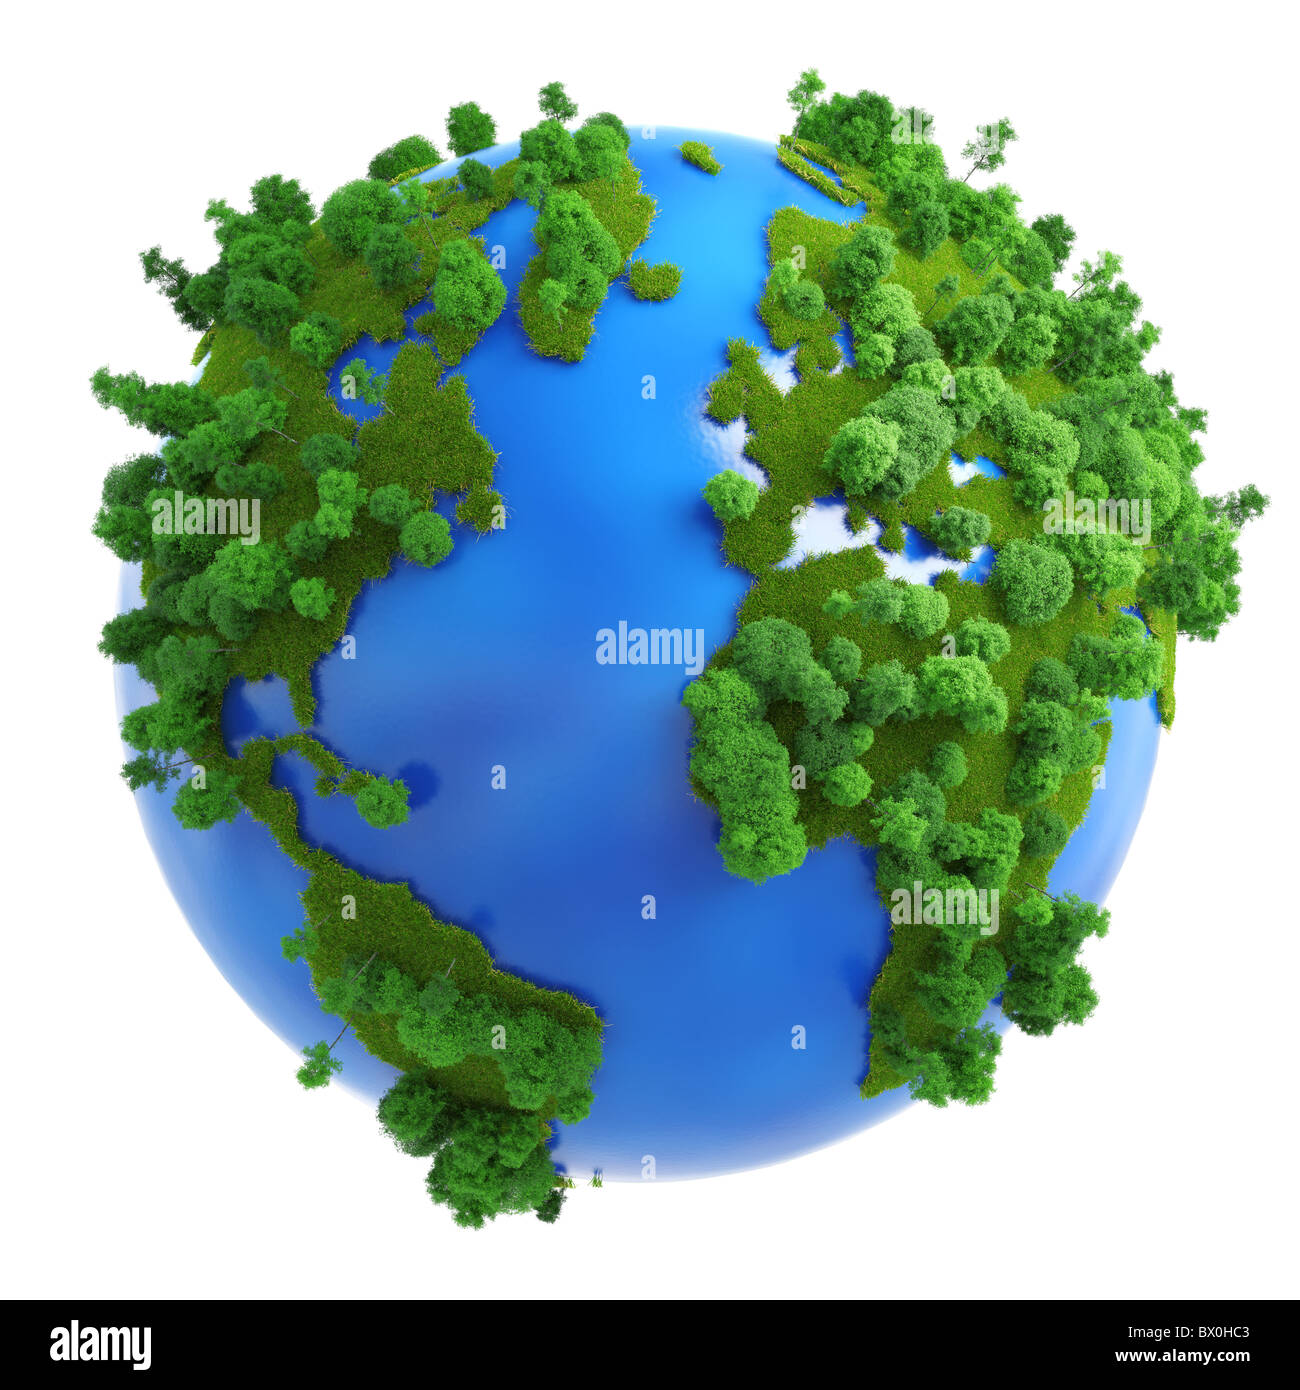 Isolierte grüner Planet-Konzept mit grünem Rasen und Bäumen auf die Kontinente und blau auf den Weltmeeren. Stockfoto